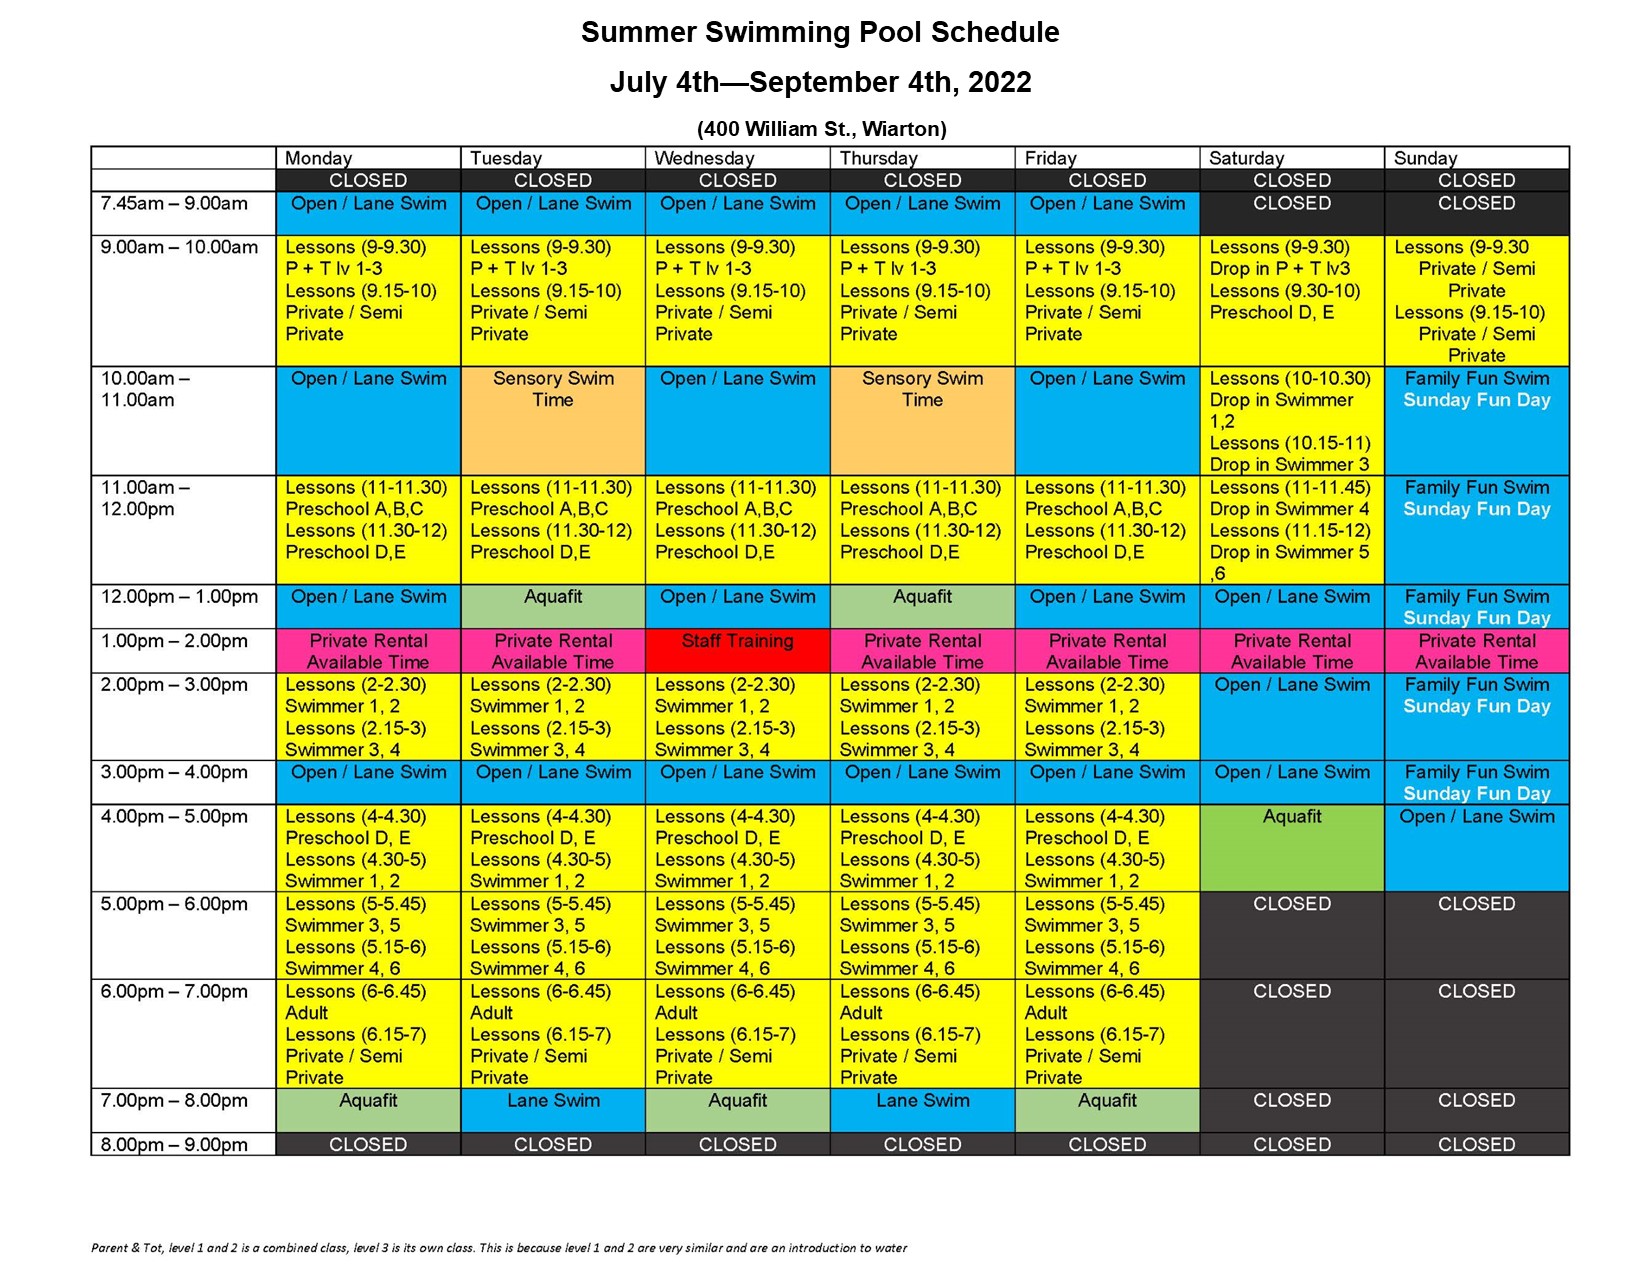 Summer_swimming_schedule